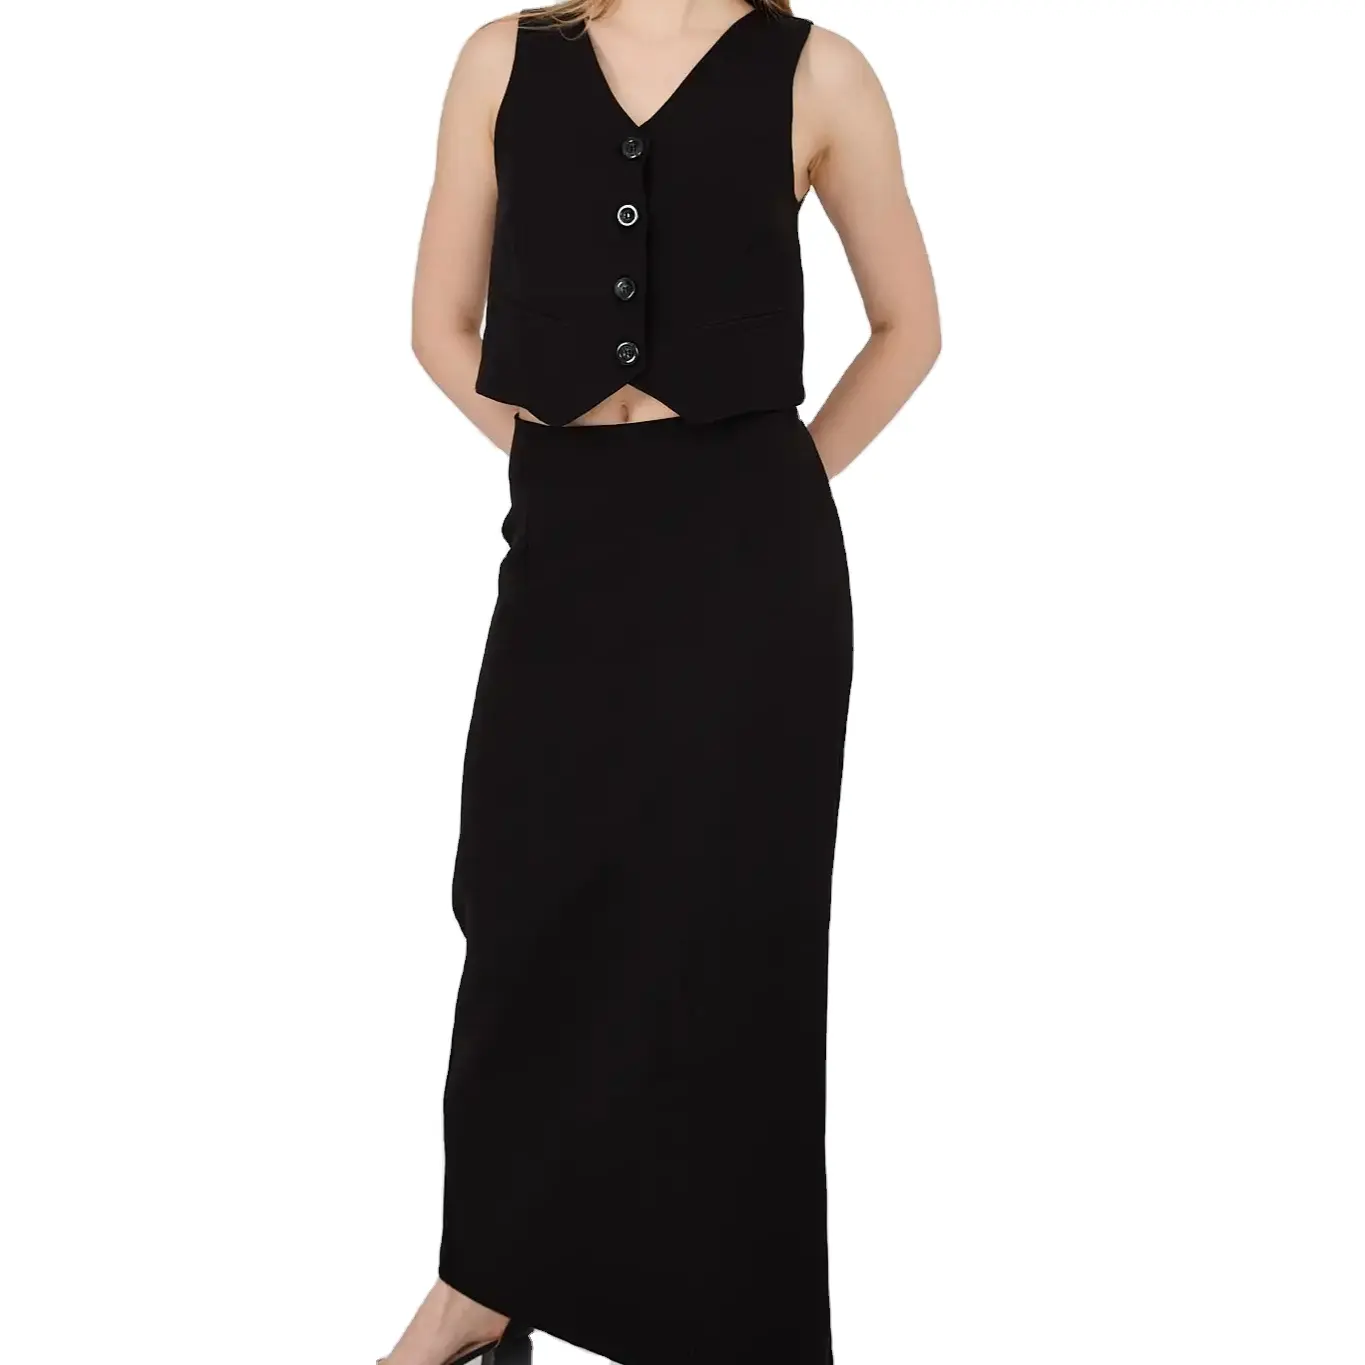 महिलाओं का काला बनियान, लंबी स्कर्ट, बटन-अप और ज़िपर विस्तृत ऊपर-नीचे सूट